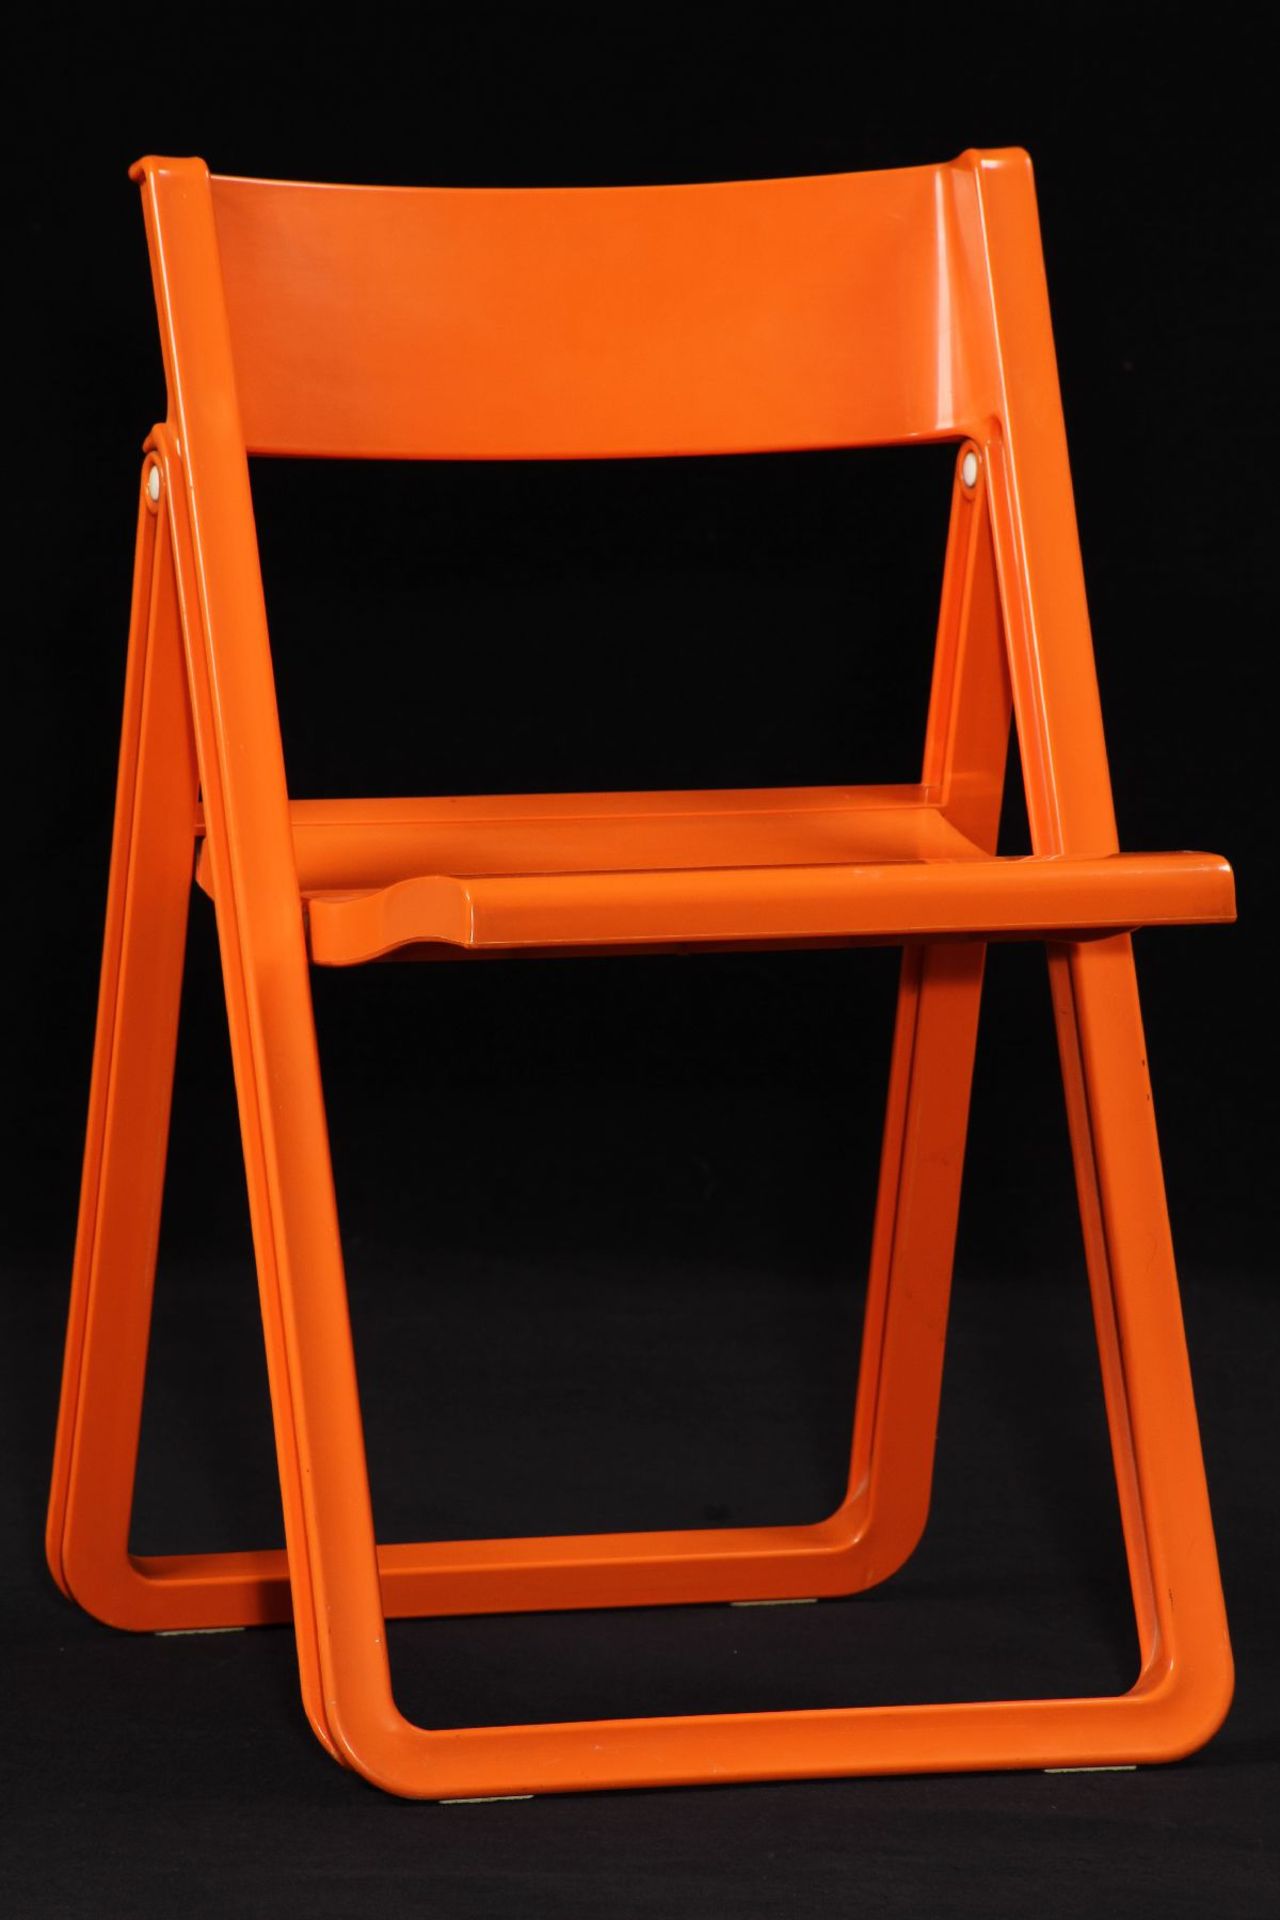 Klappstuhl, "Allibert", 1970er Jahre, Kunststoff orange, sehr stabile Ausführung, praktisch,